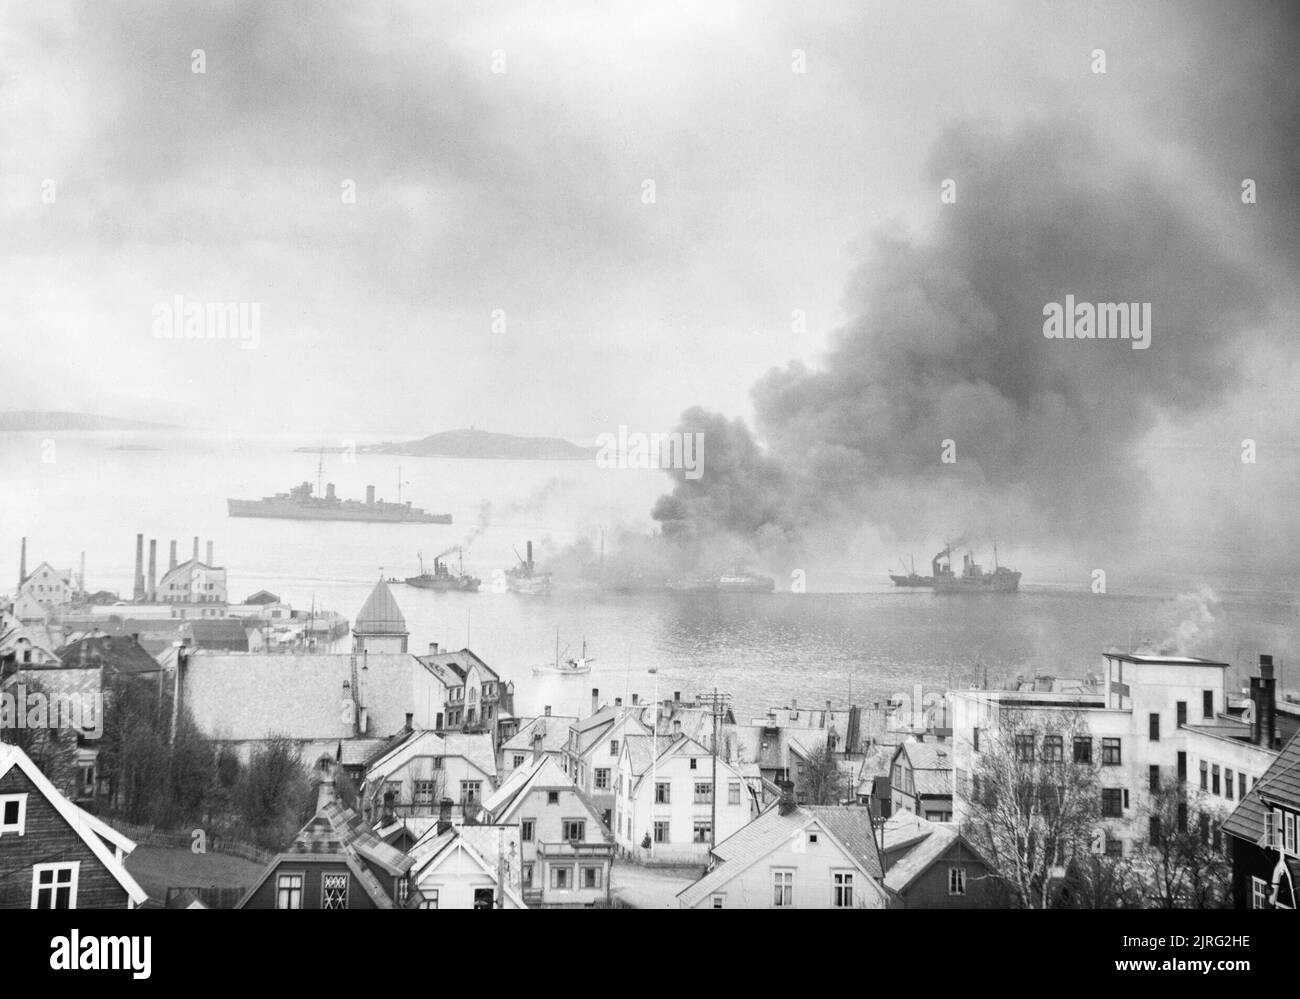 La Royal Navy pendant la Seconde Guerre mondiale un remorquage destroyers britanniques capturés, citerne essence enflammée par un raid aérien allemand, dans un fjord norvégien à couler en cas de dommages à d'autres de l'expédition. Une partie de la ville voisine peut être vu dans l'avant-plan. Banque D'Images